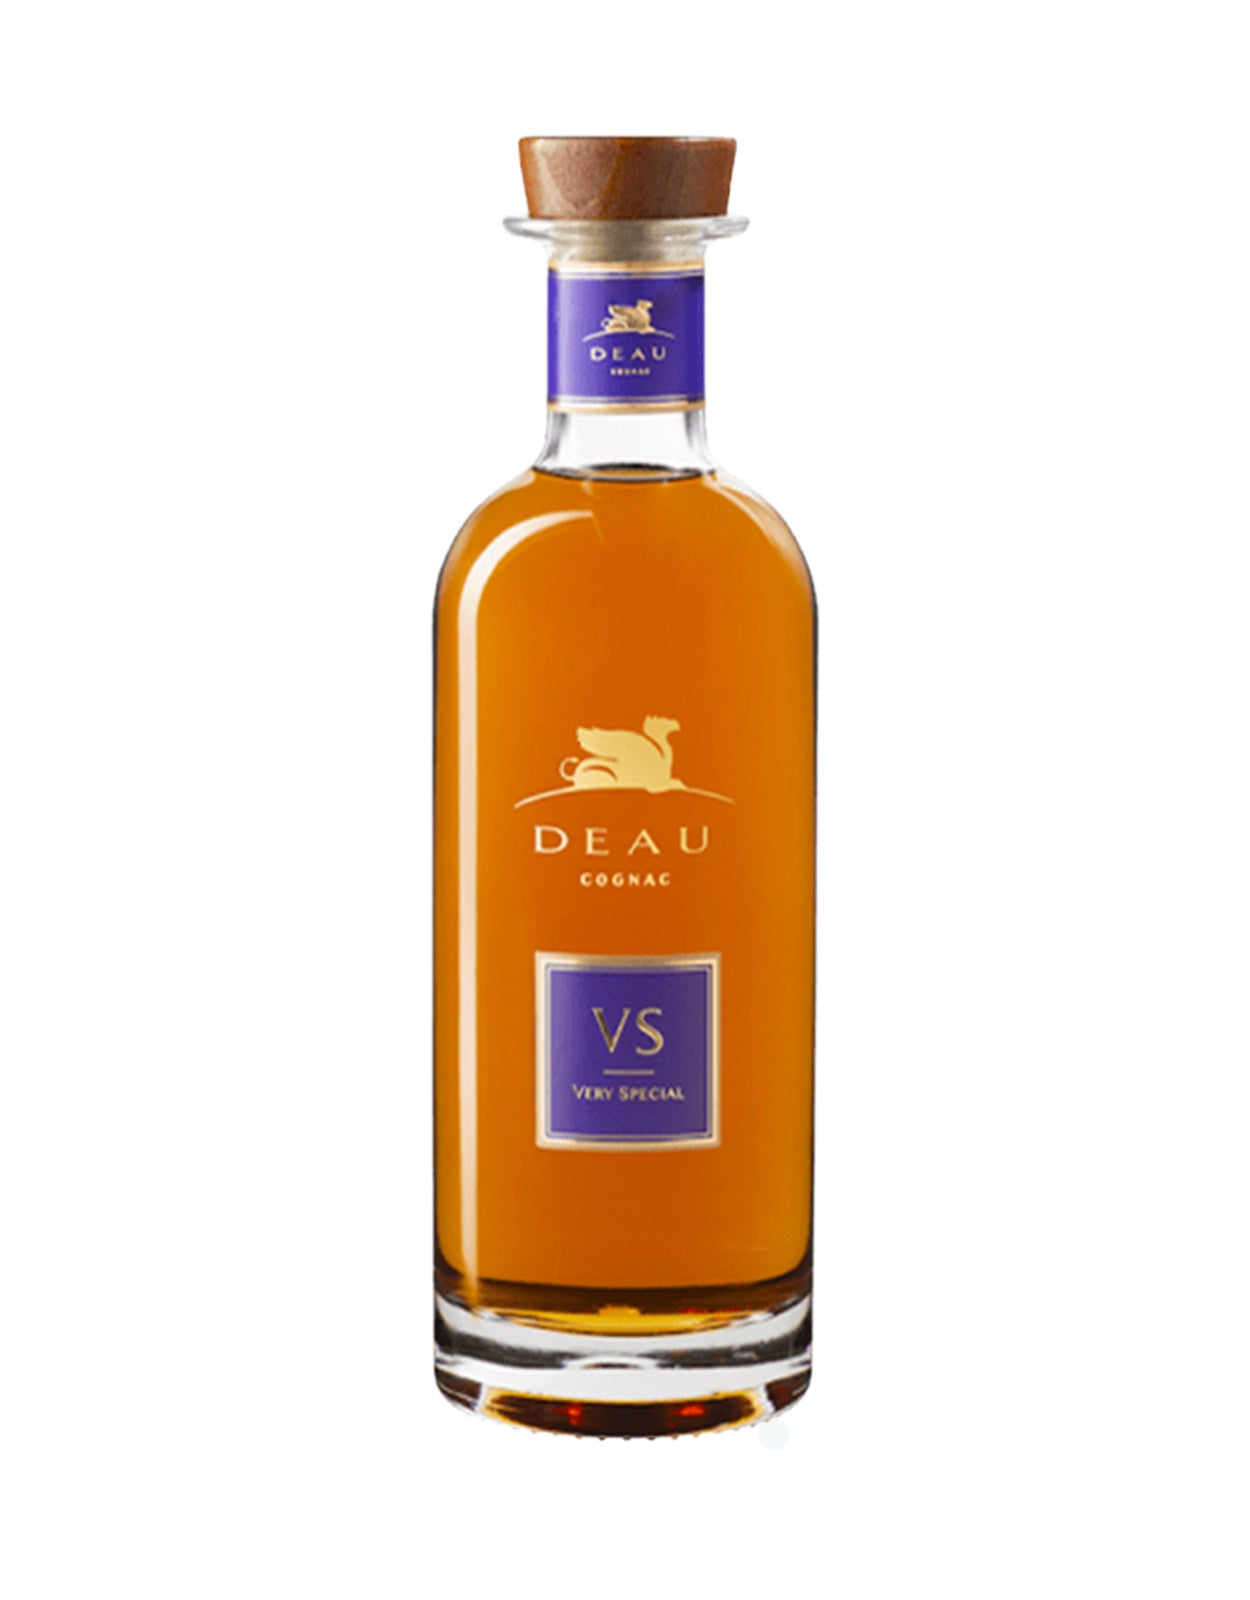 Deau VS Cognac